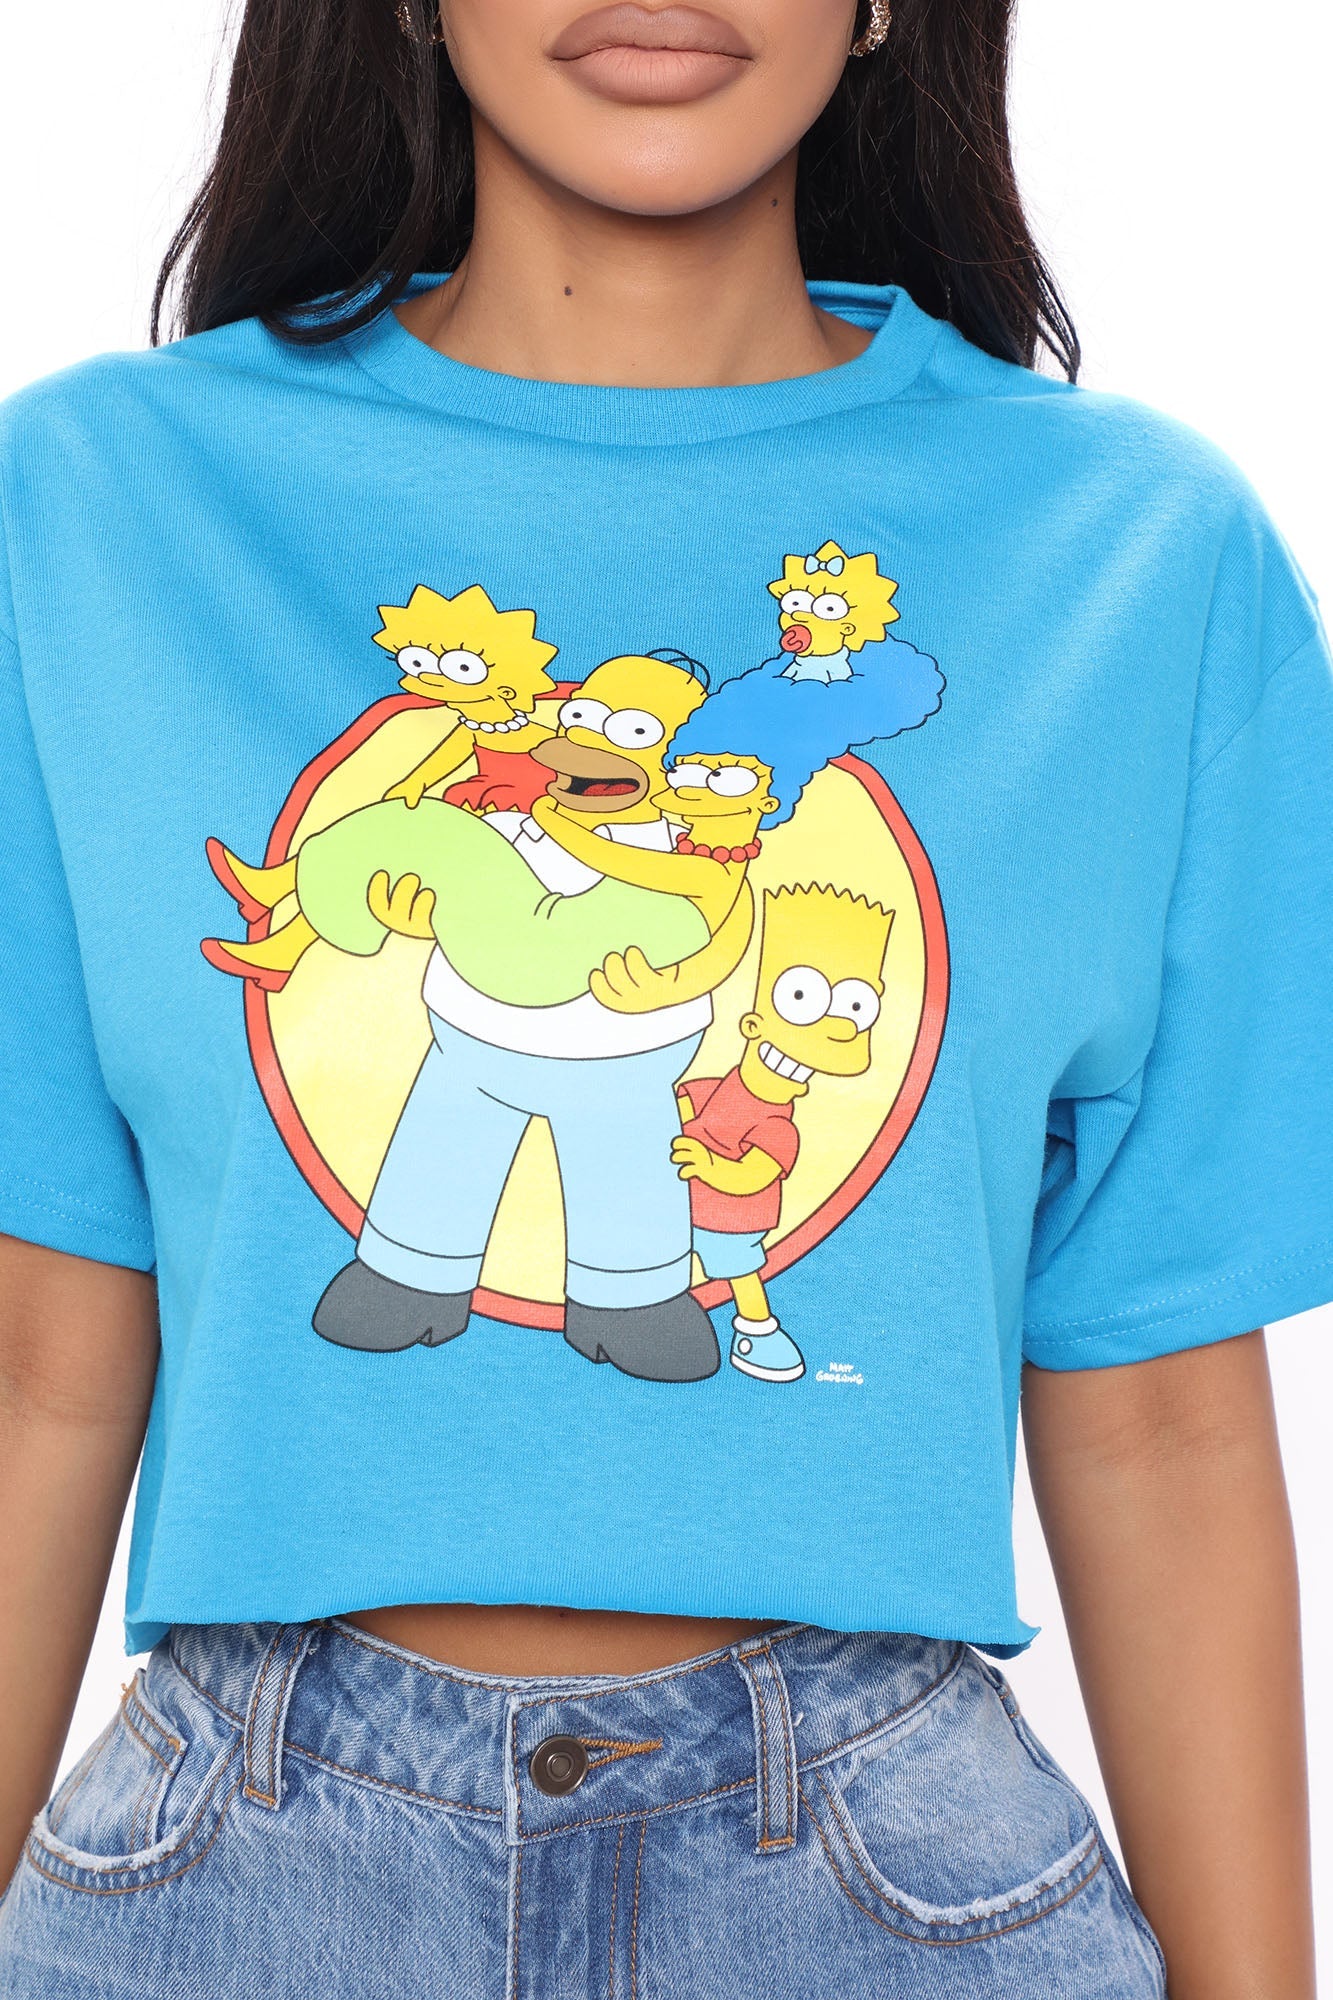 The Simpsons Family Portrait Crop Top